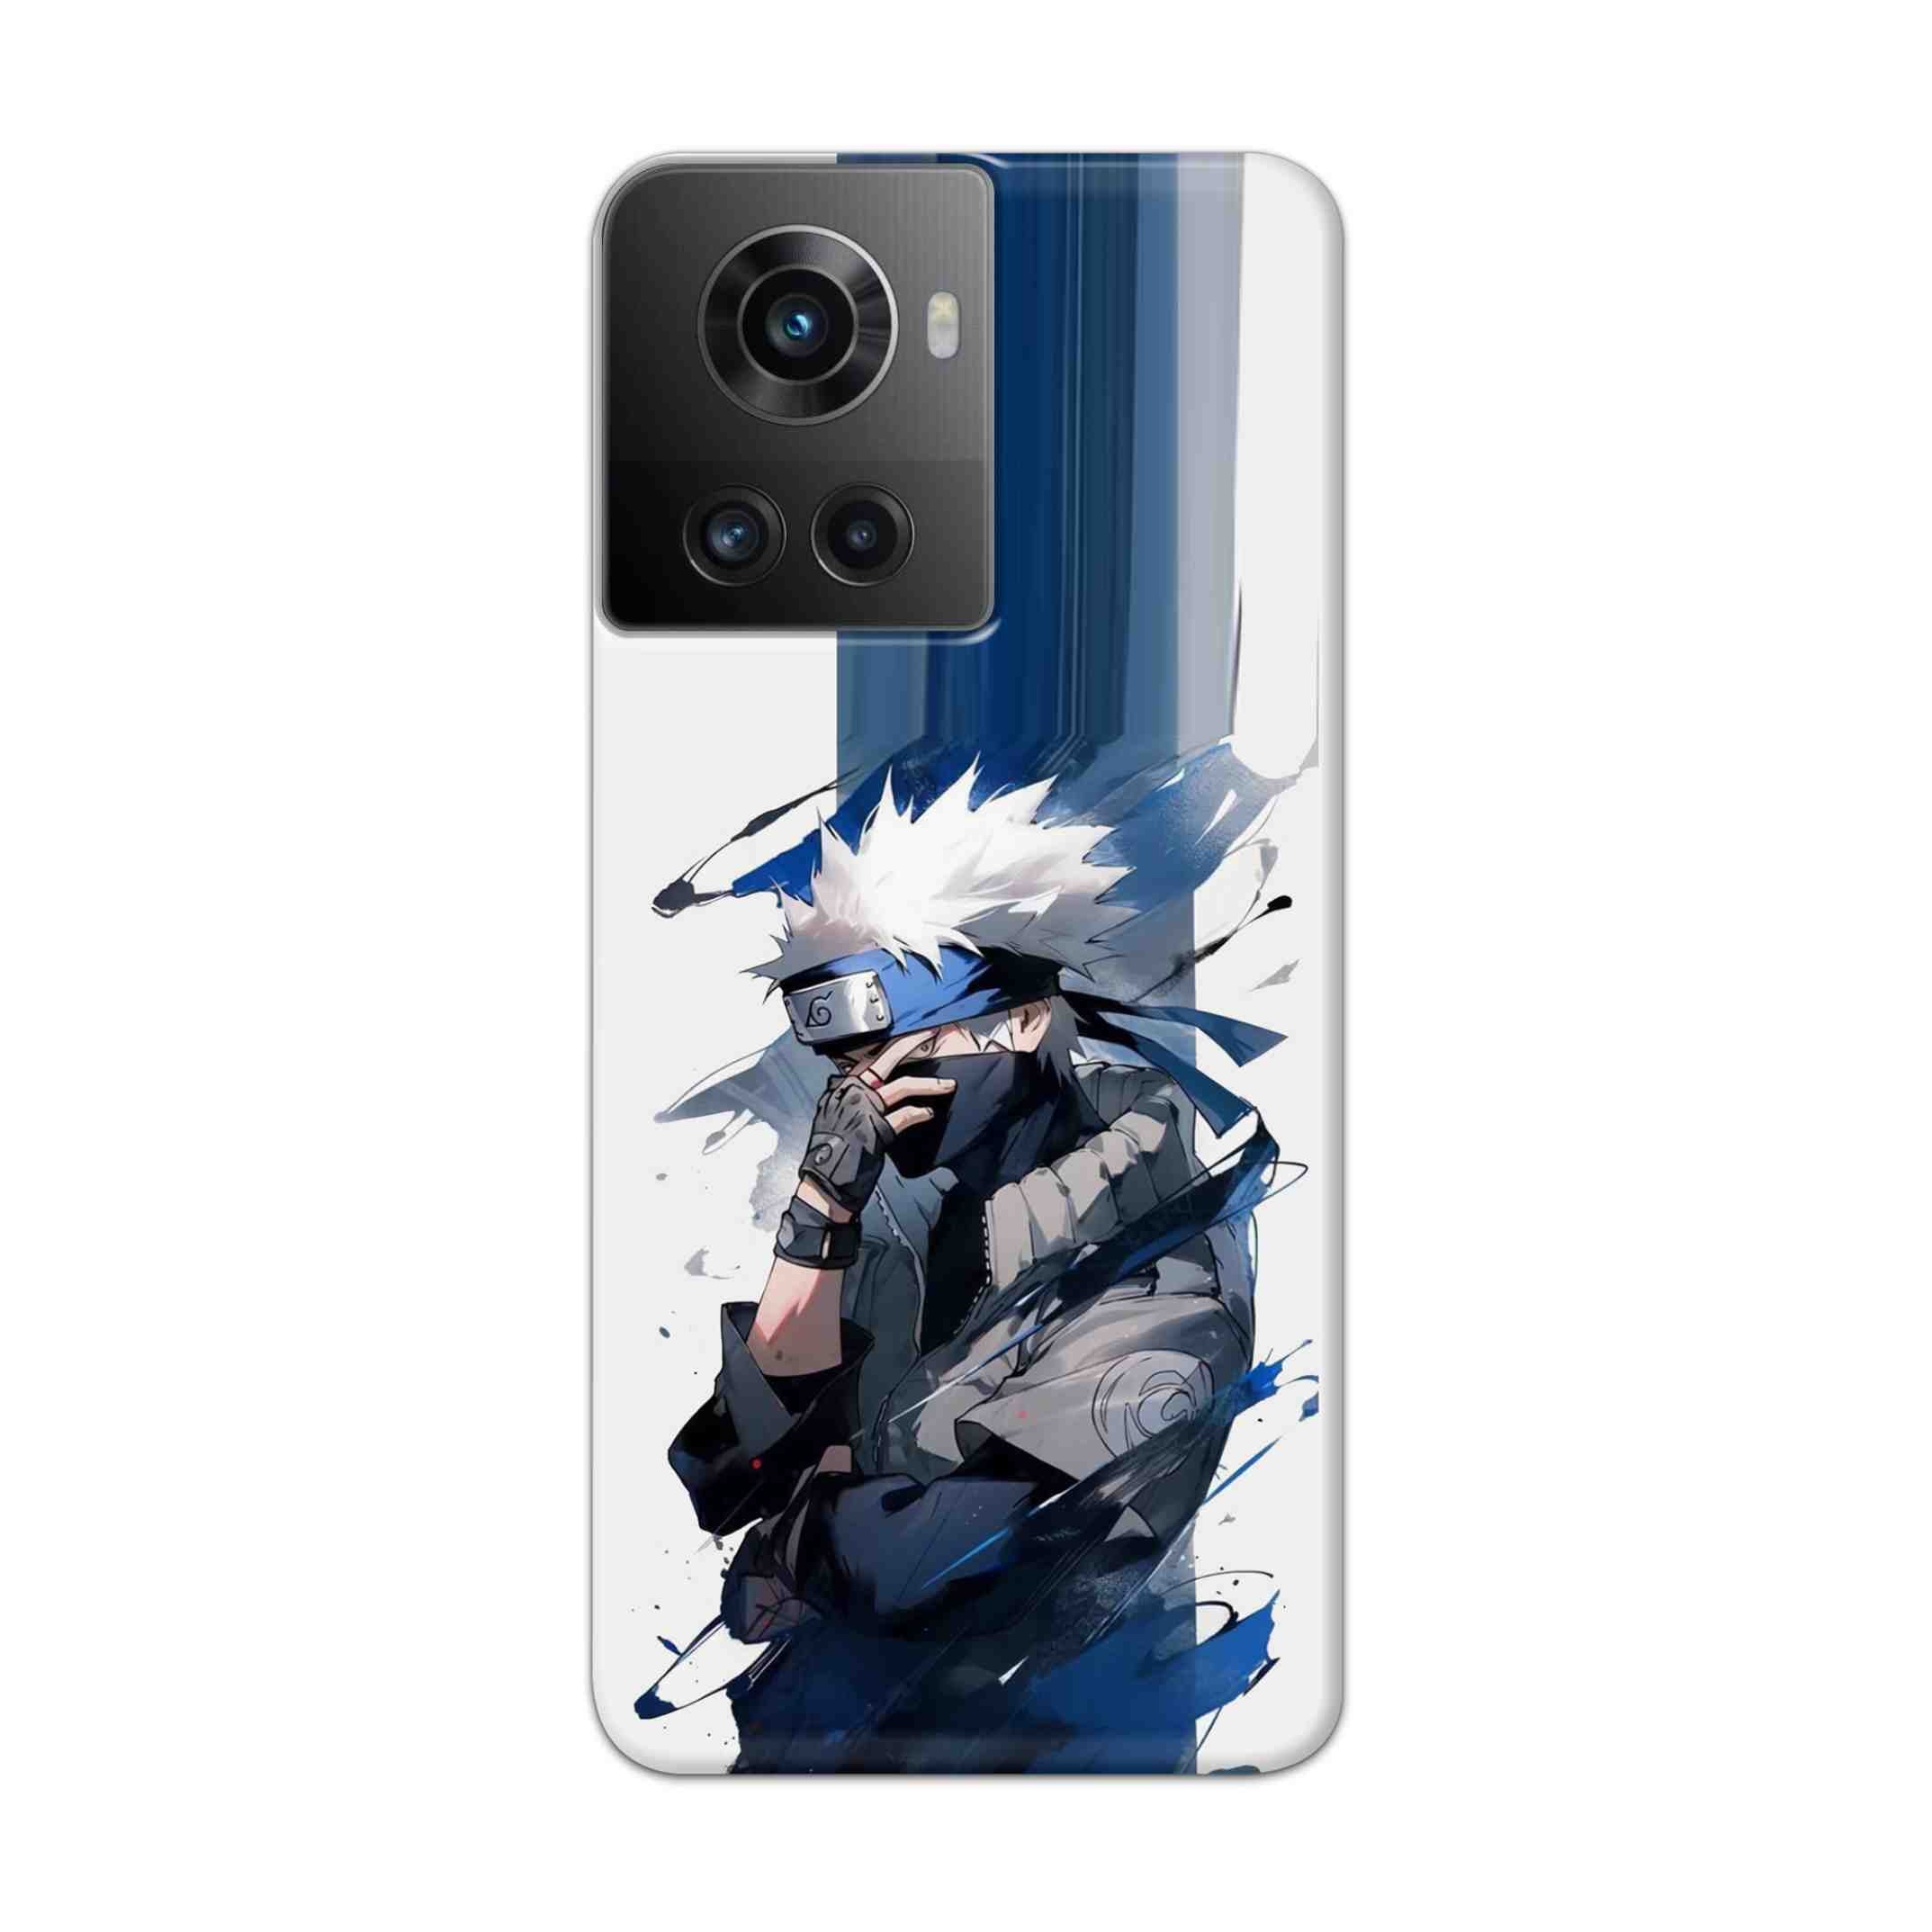 Buy Kakachi Hard Back Mobile Phone Case Cover For Oneplus 10R Online